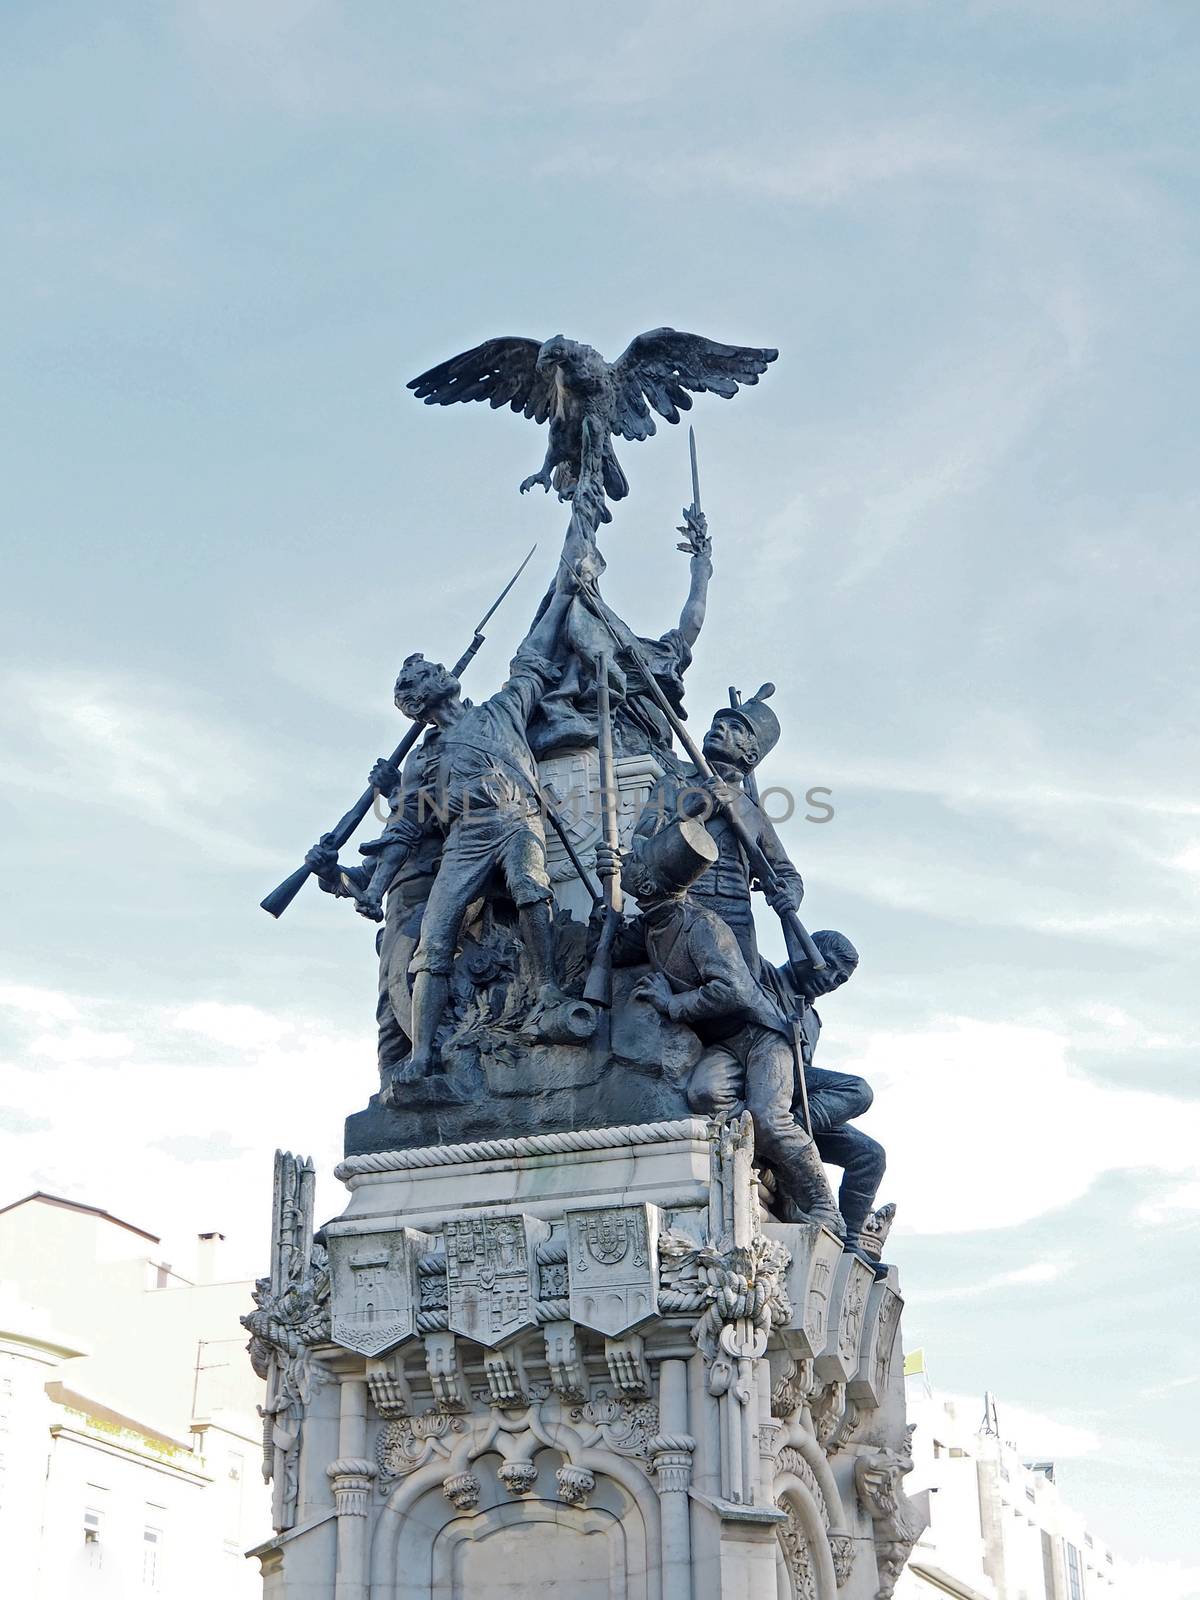 Impressive sculpture in Lisbon in Portugal by Stimmungsbilder